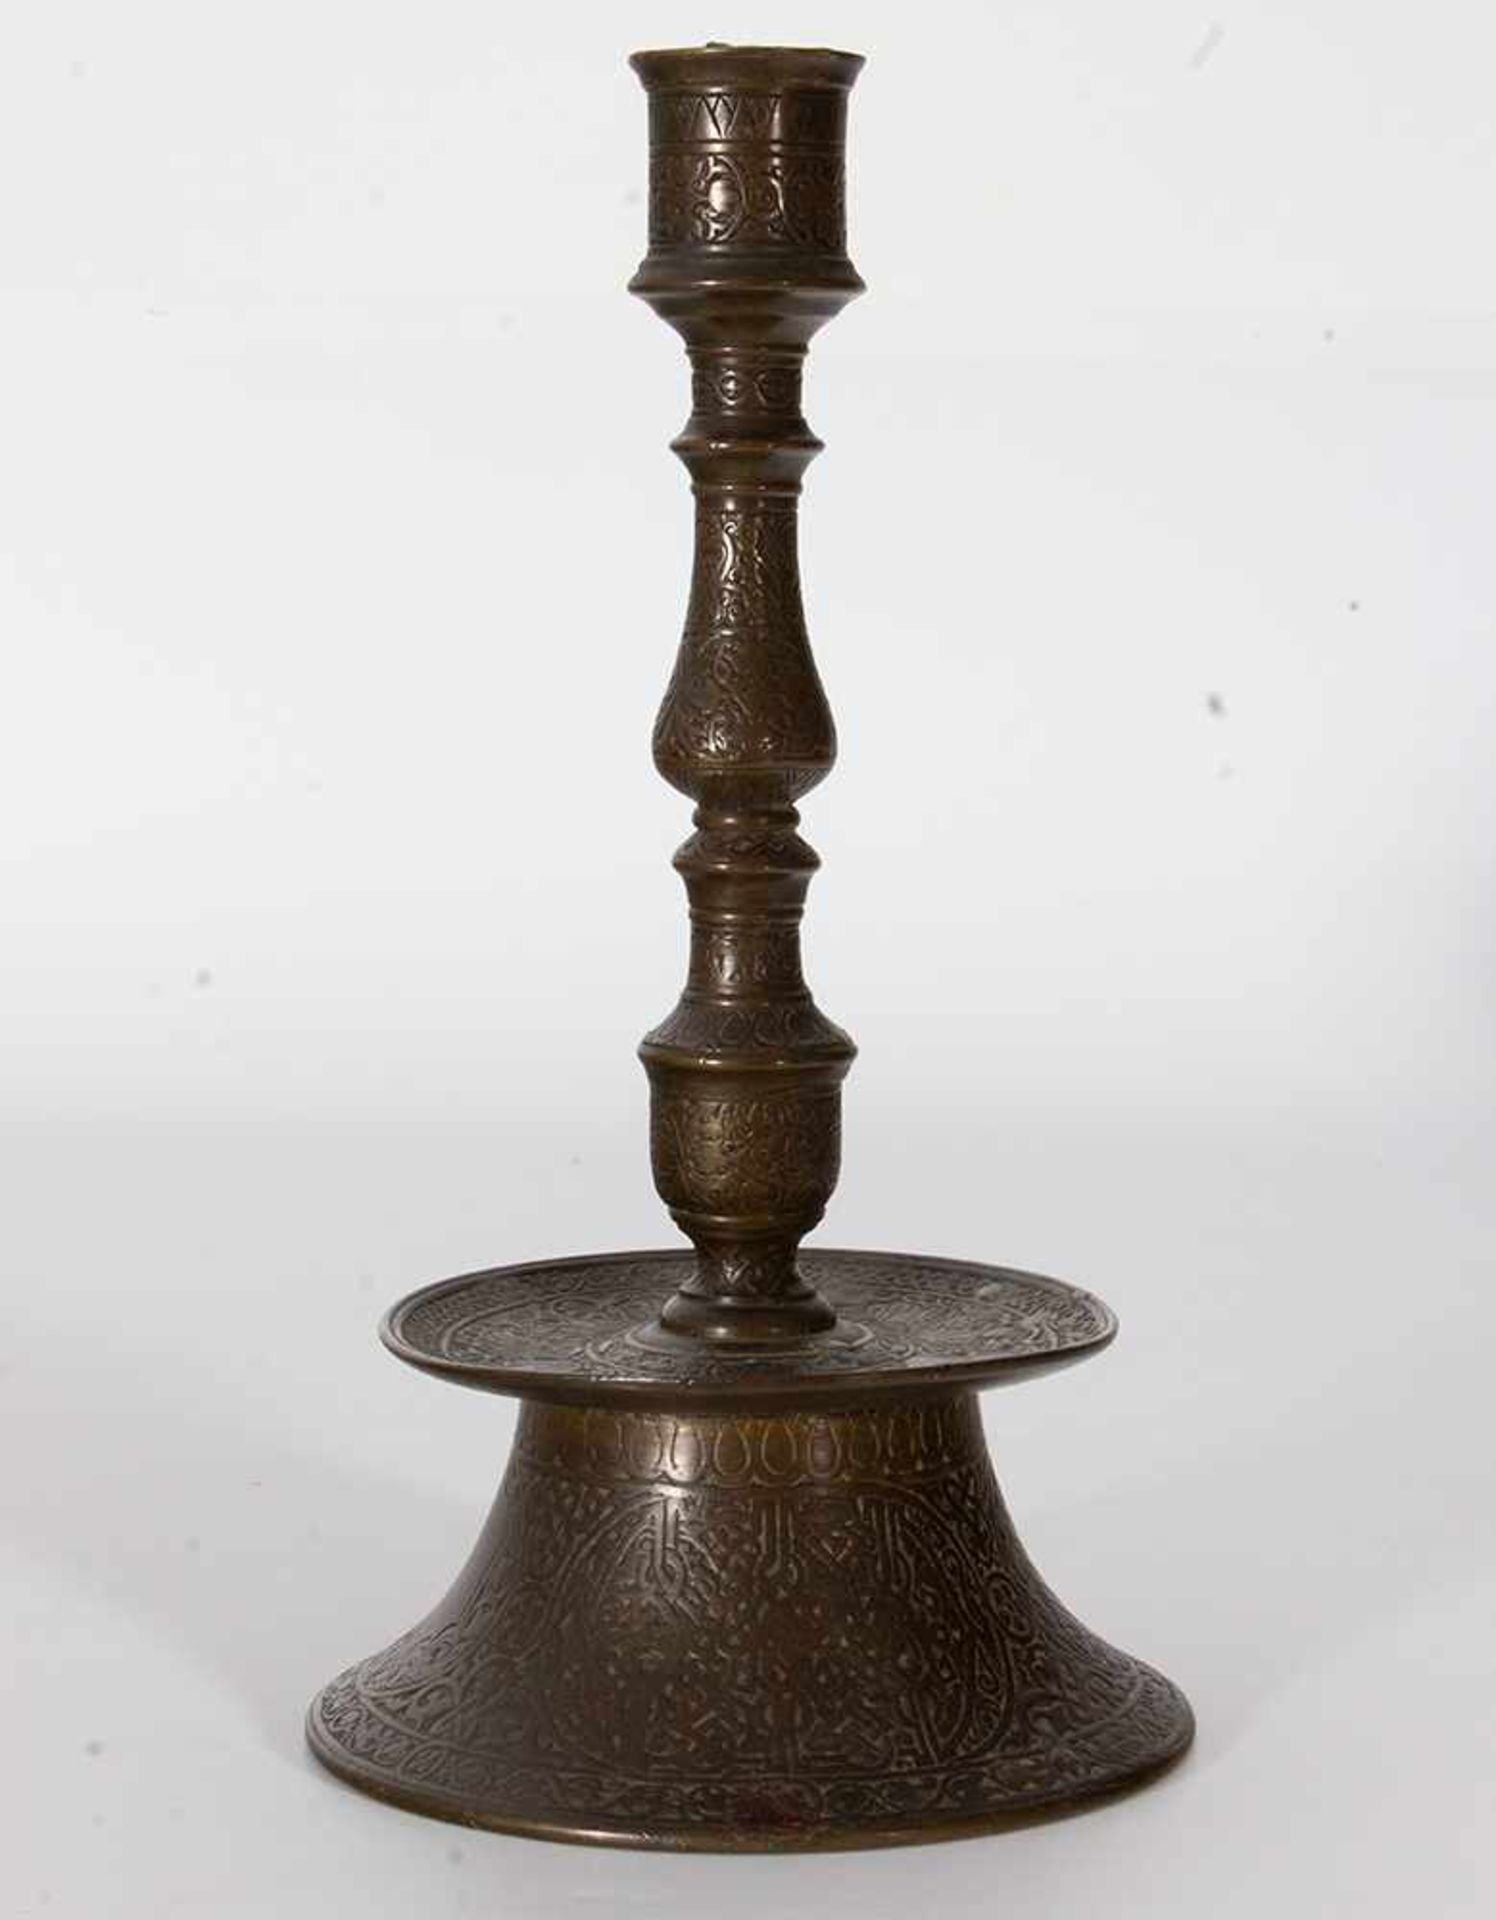 Dos candeleros islámicos en bronce con decoración estilizada, uno con incrustaciones en plata, de